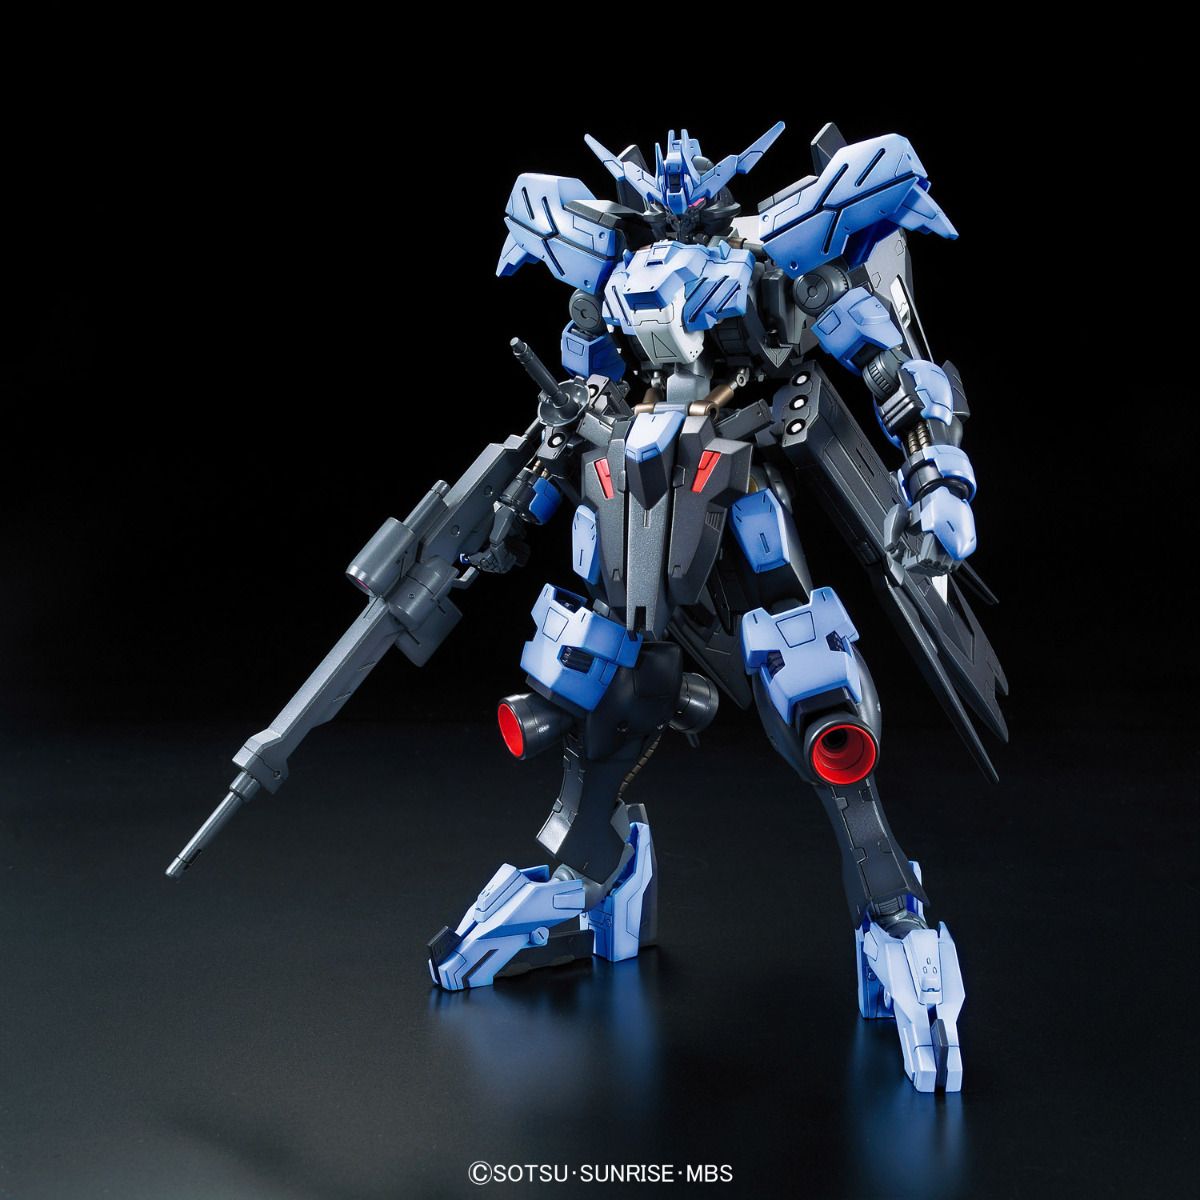 FM - ASW-G-XX Gundam Vidar